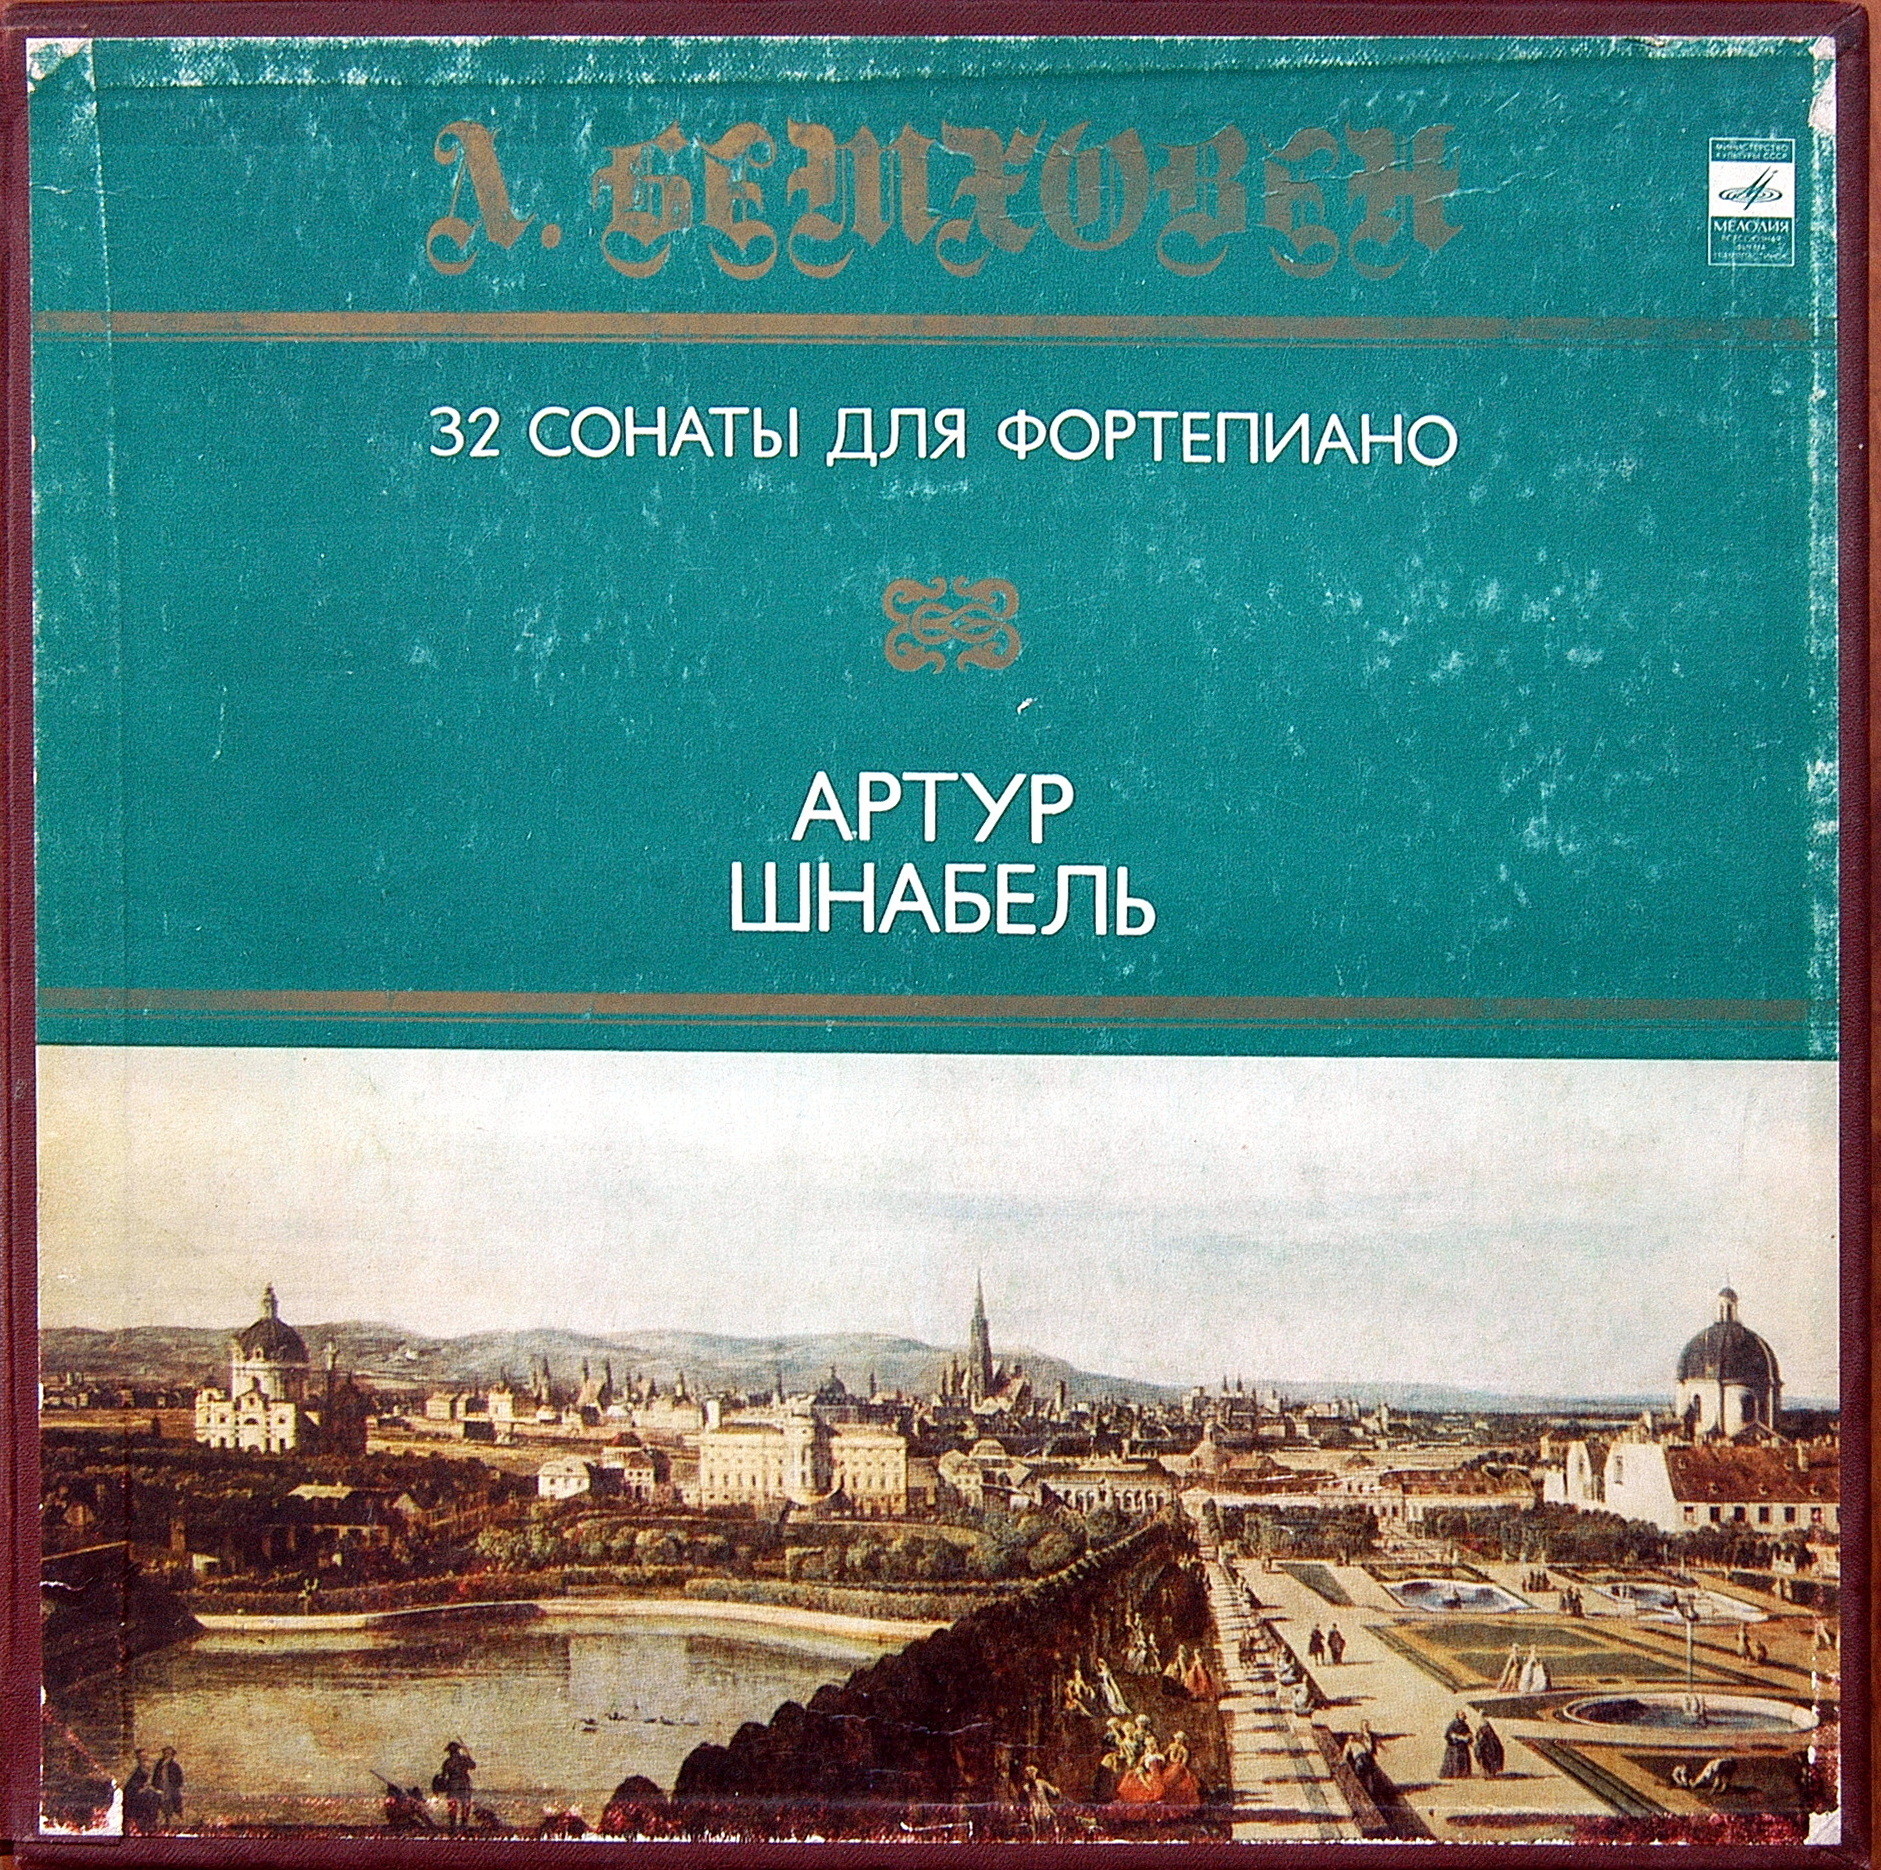 Л. БЕТХОВЕН (1770-1827): 32 Сонаты для Фортепиано. Артур Шнабель (Комплект 1)